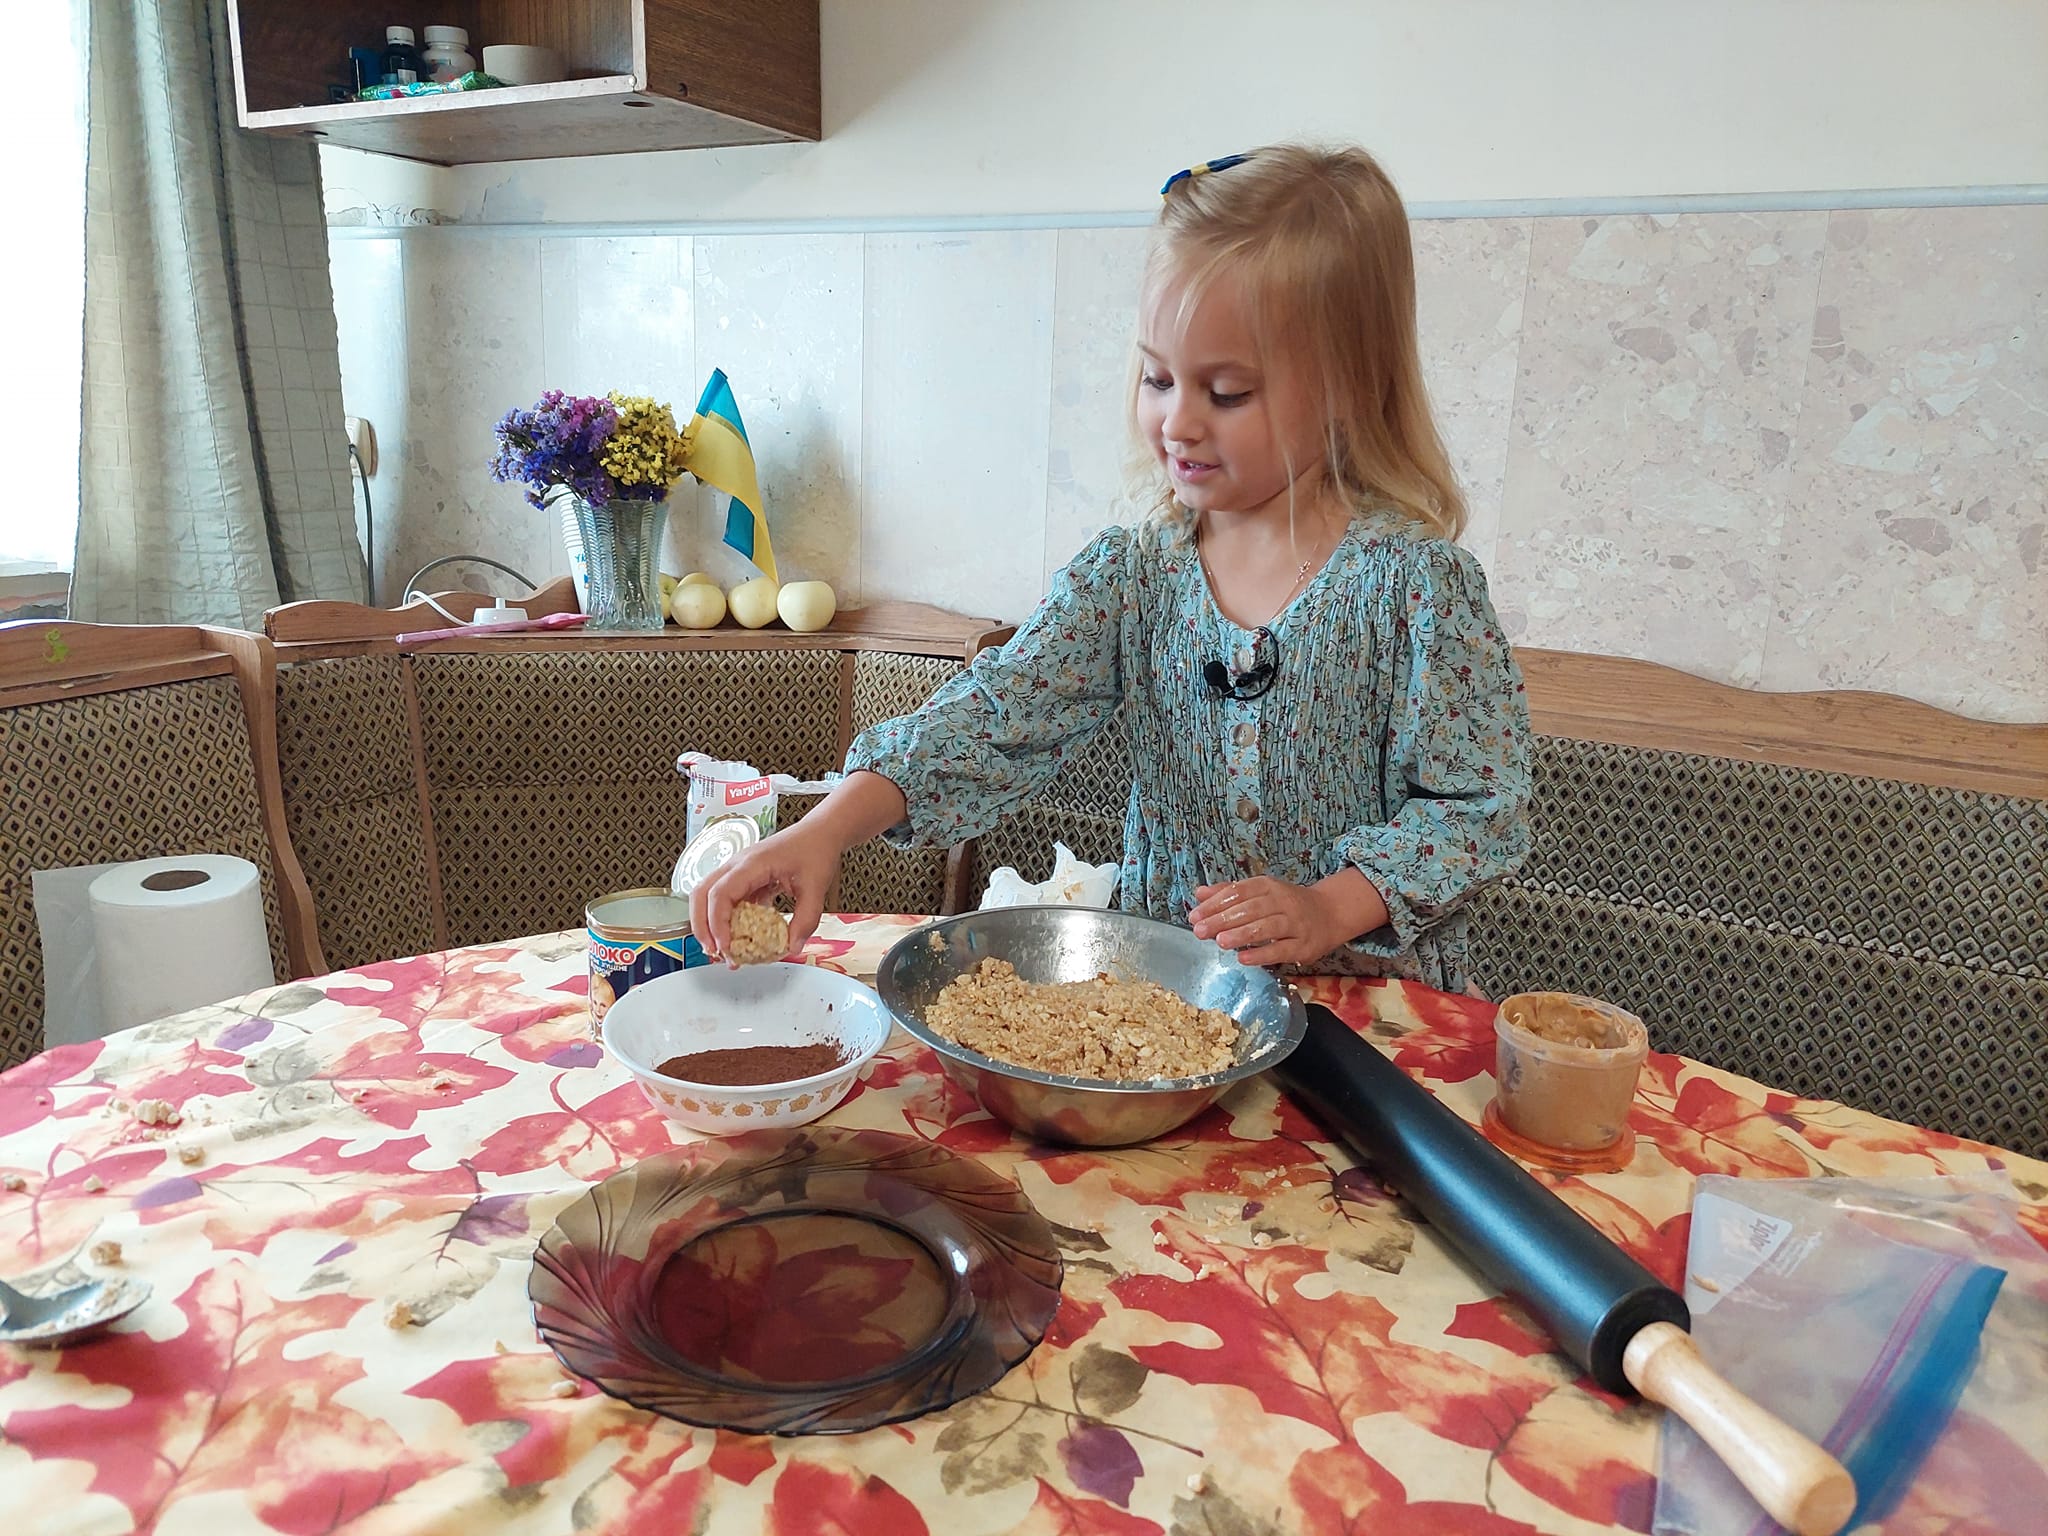 Ева Грущинская – будущий робототехник, а пока печет кексы. Фото: suspilne.media